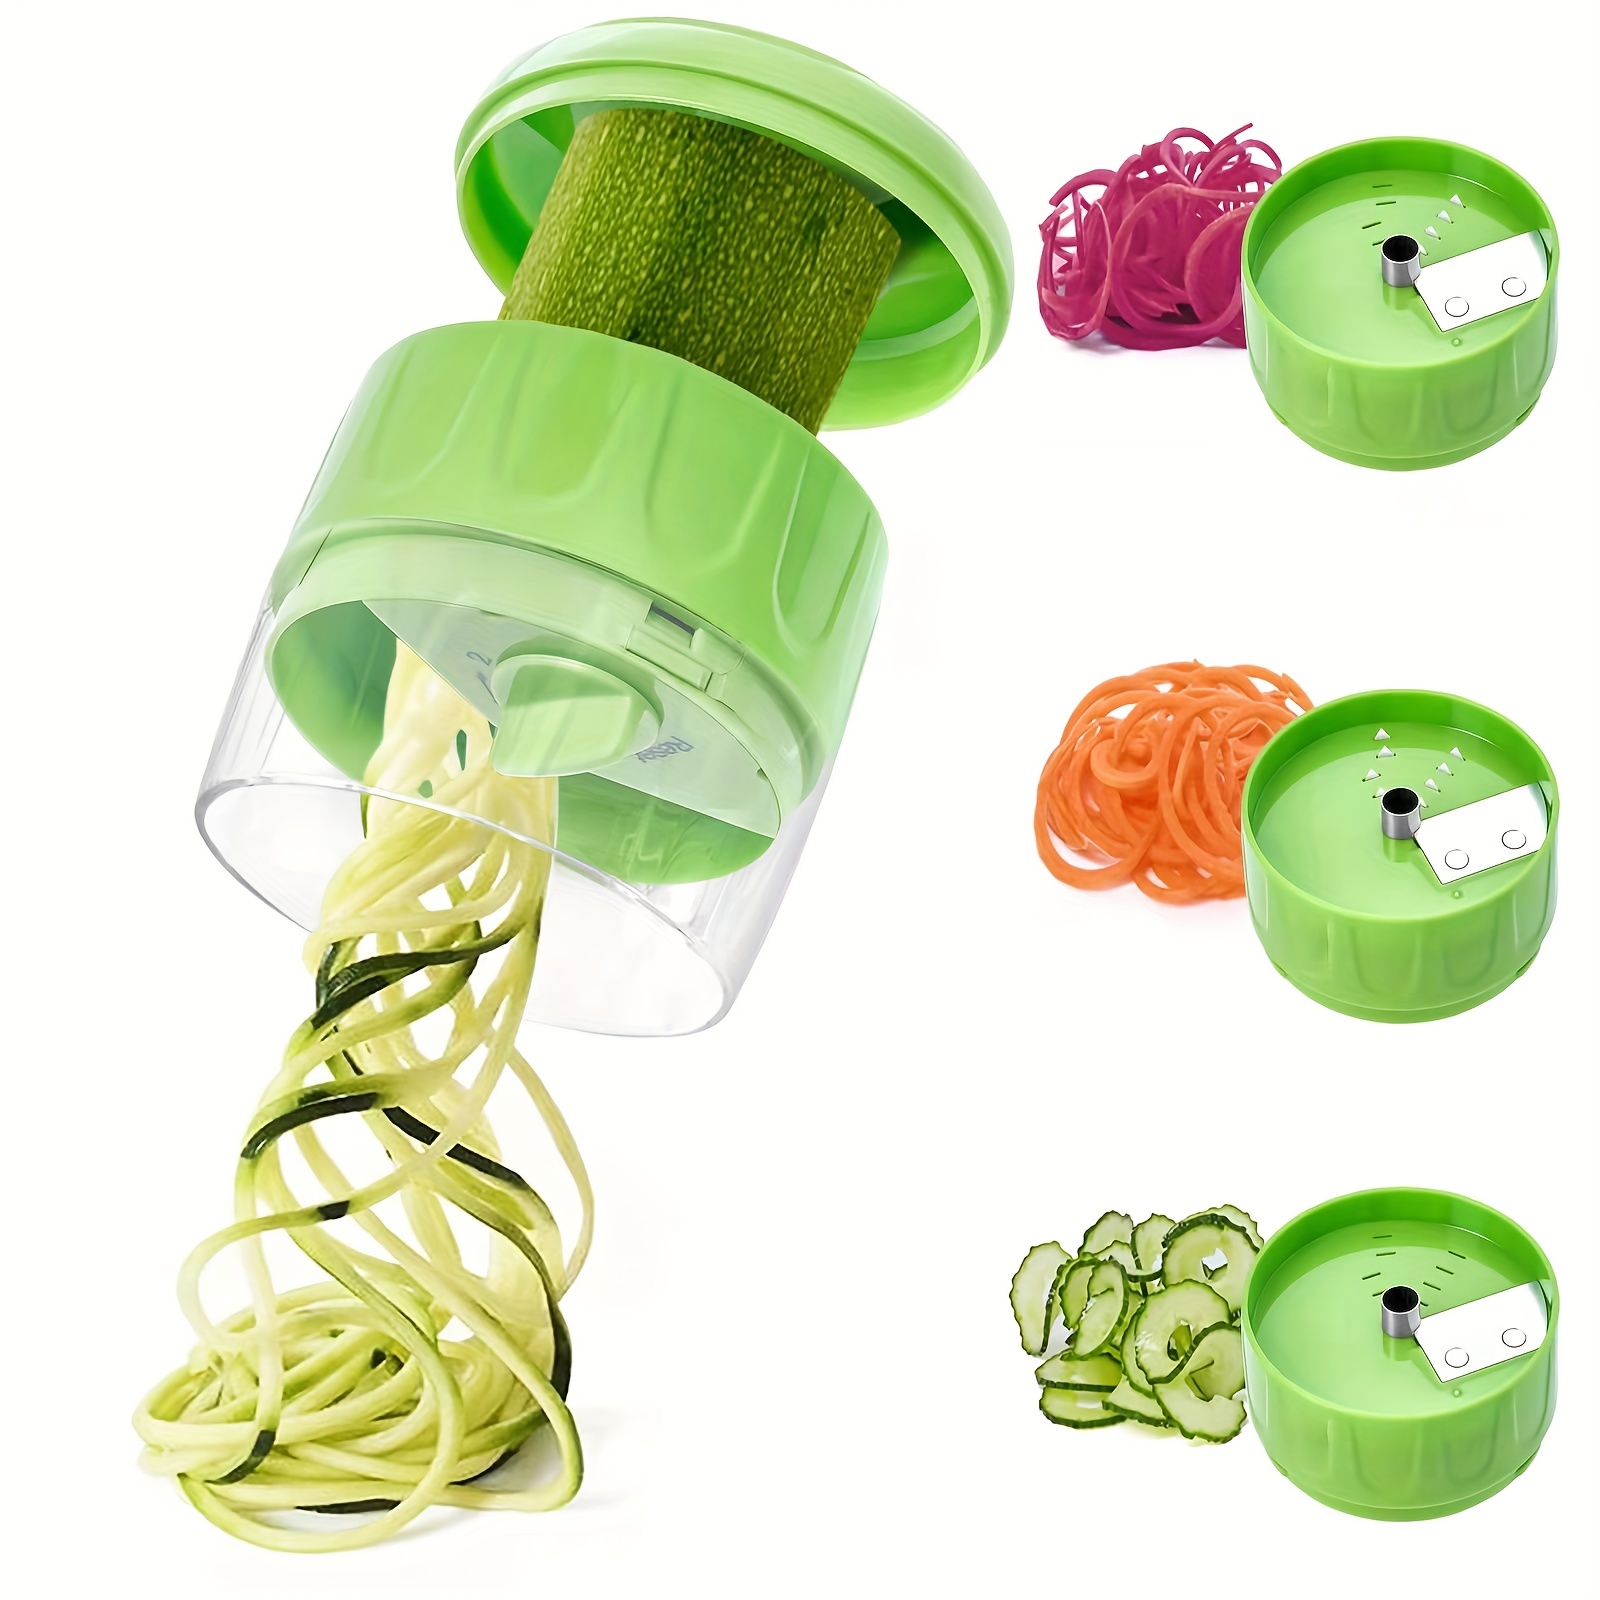 1 Set, Vegetable Spiralizer, Manual Zucchini Noodle Maker, Zoodles  Spiralizer For Potato, Multifunctional Vegetable Slicer, Fruit Grater,  Kitchen Stuf